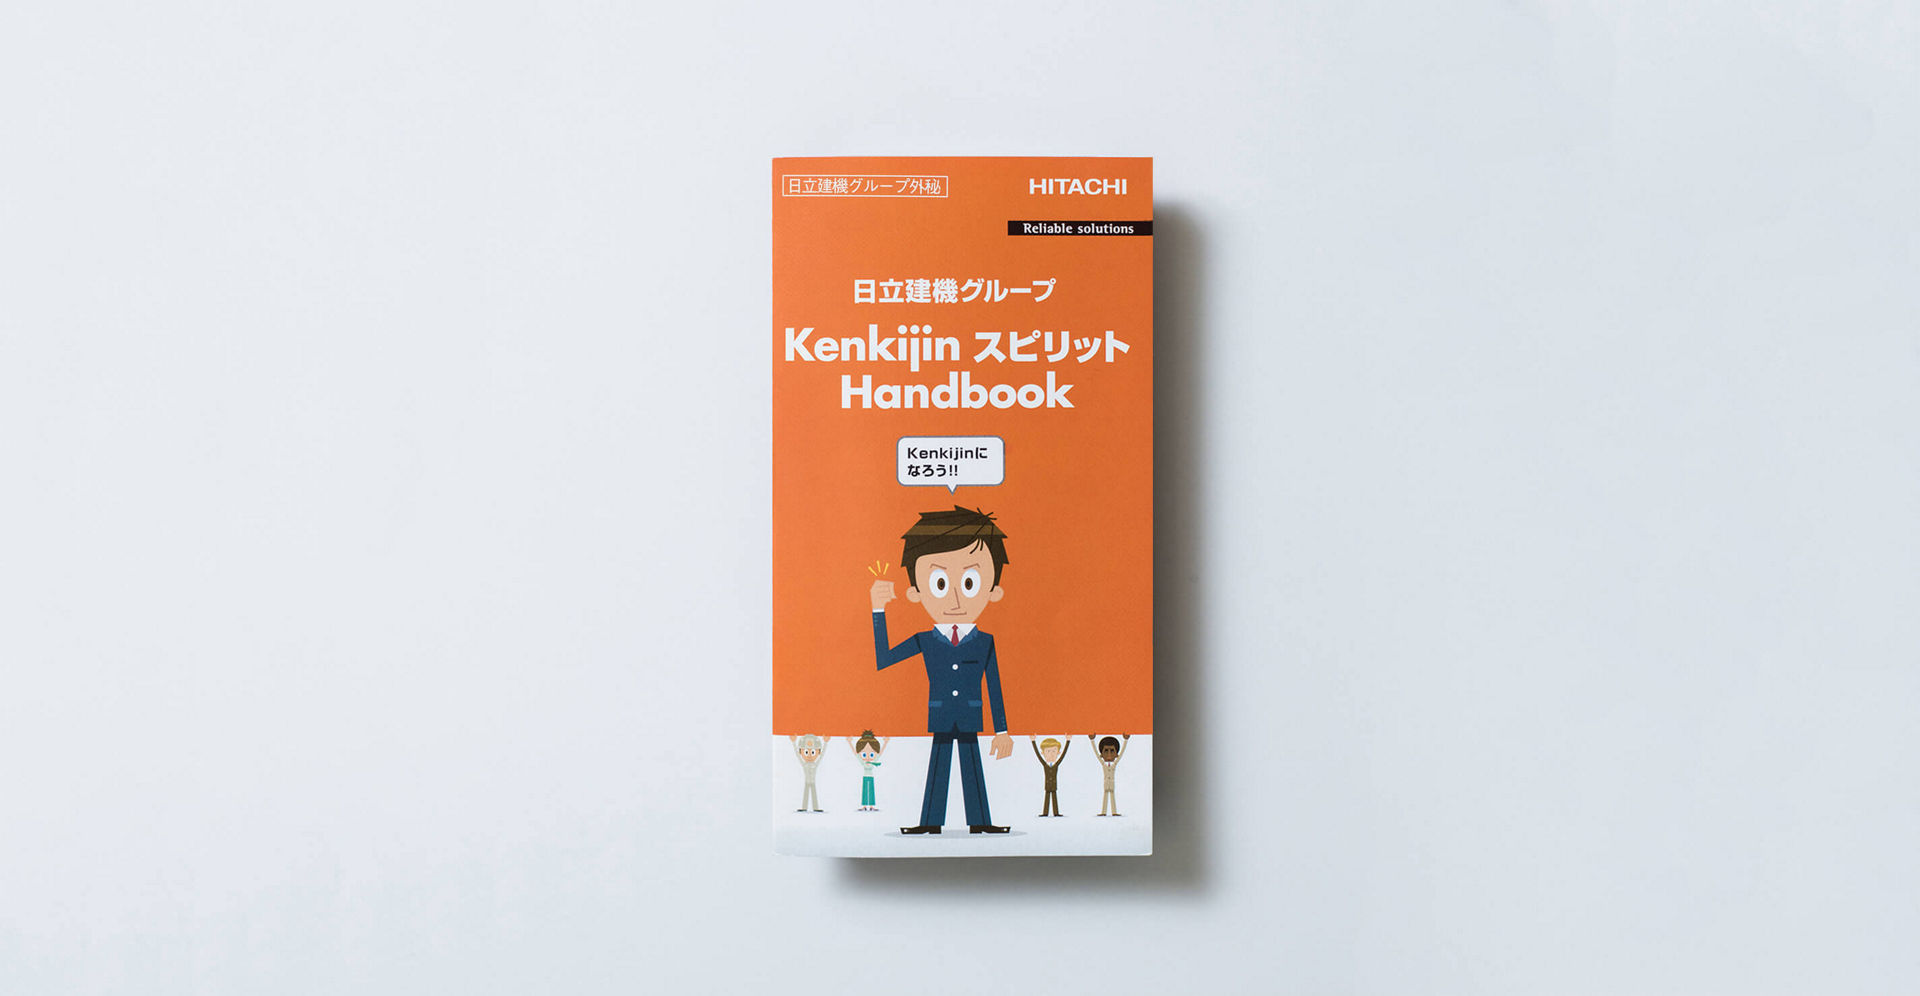 Kenkijin スピリット Handbook